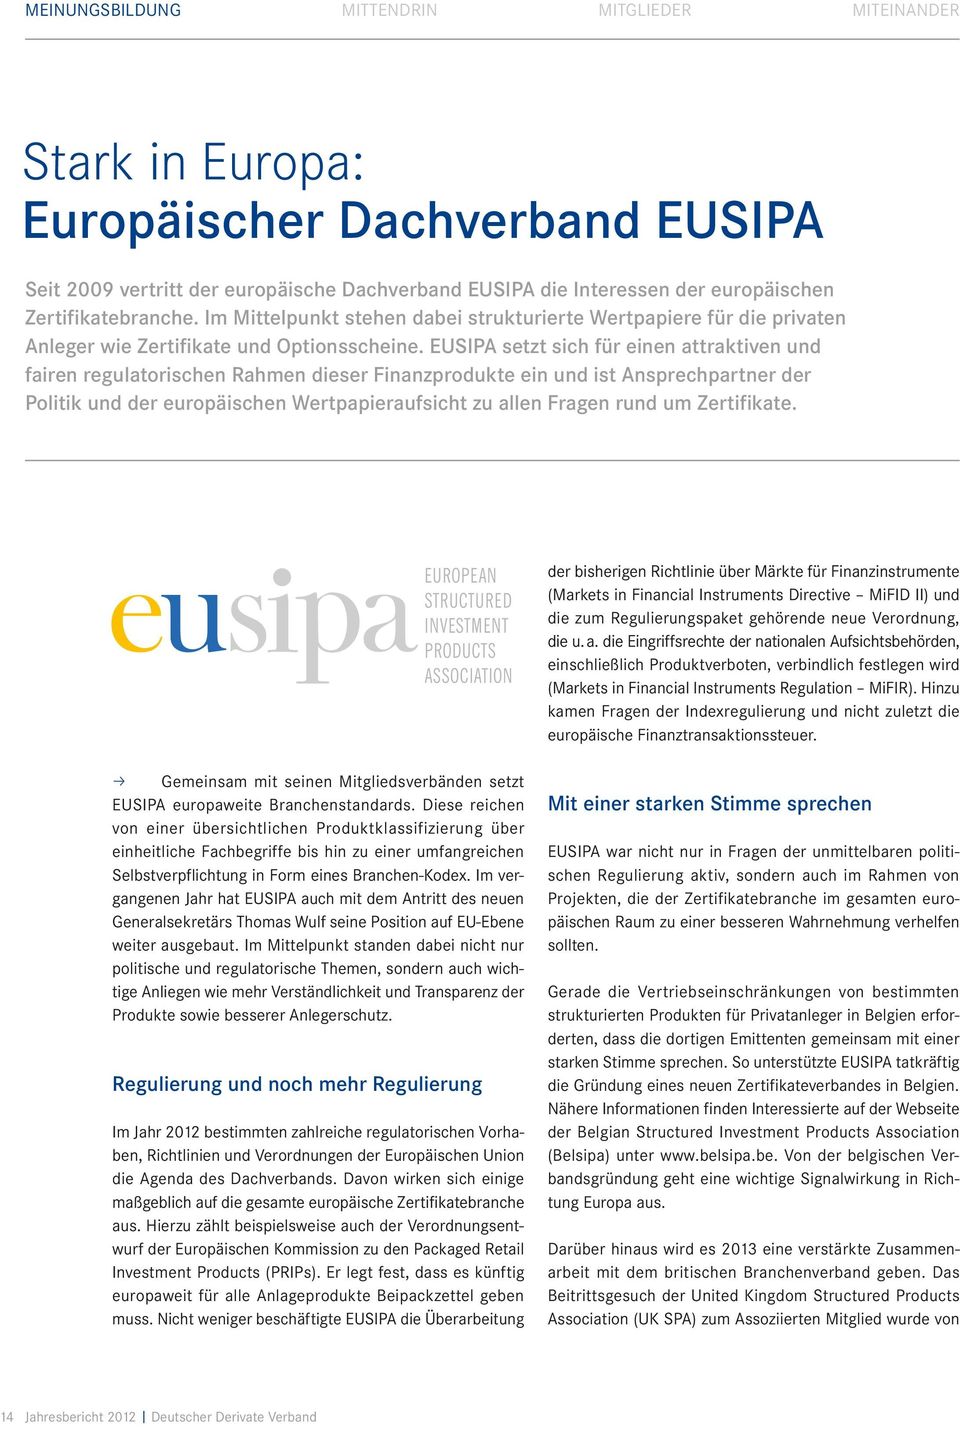 EUSIPA setzt sich für einen attraktiven und fairen regulatorischen Rahmen dieser Finanzprodukte ein und ist Ansprechpartner der Politik und der europäischen Wertpapieraufsicht zu allen Fragen rund um